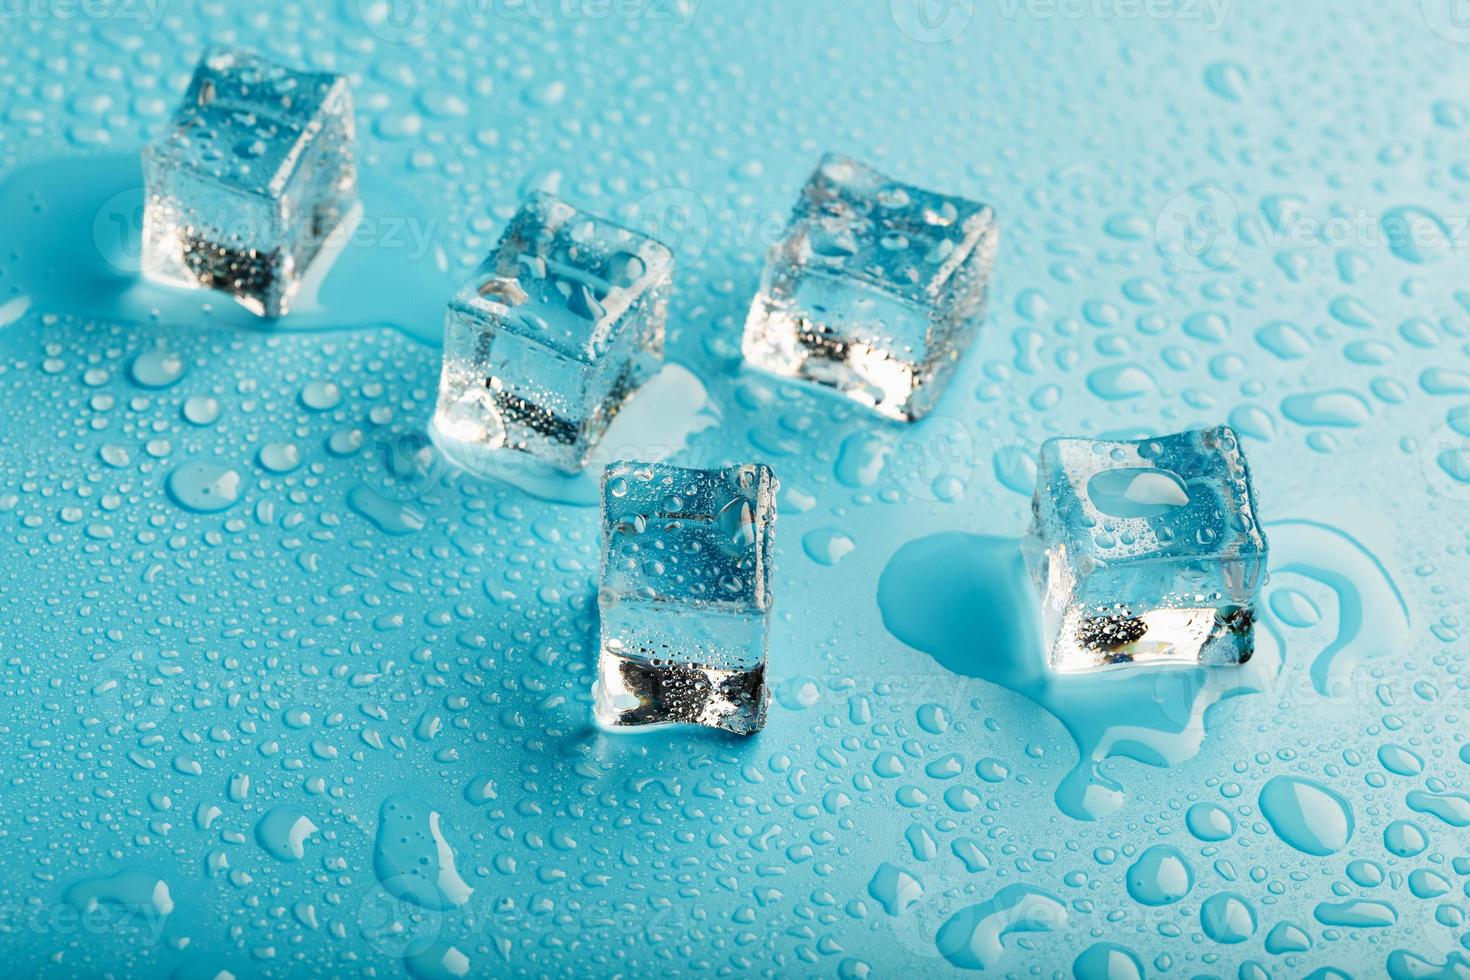 cubos de gelo com gotas de água espalhadas sobre um fundo azul, vista superior. foto